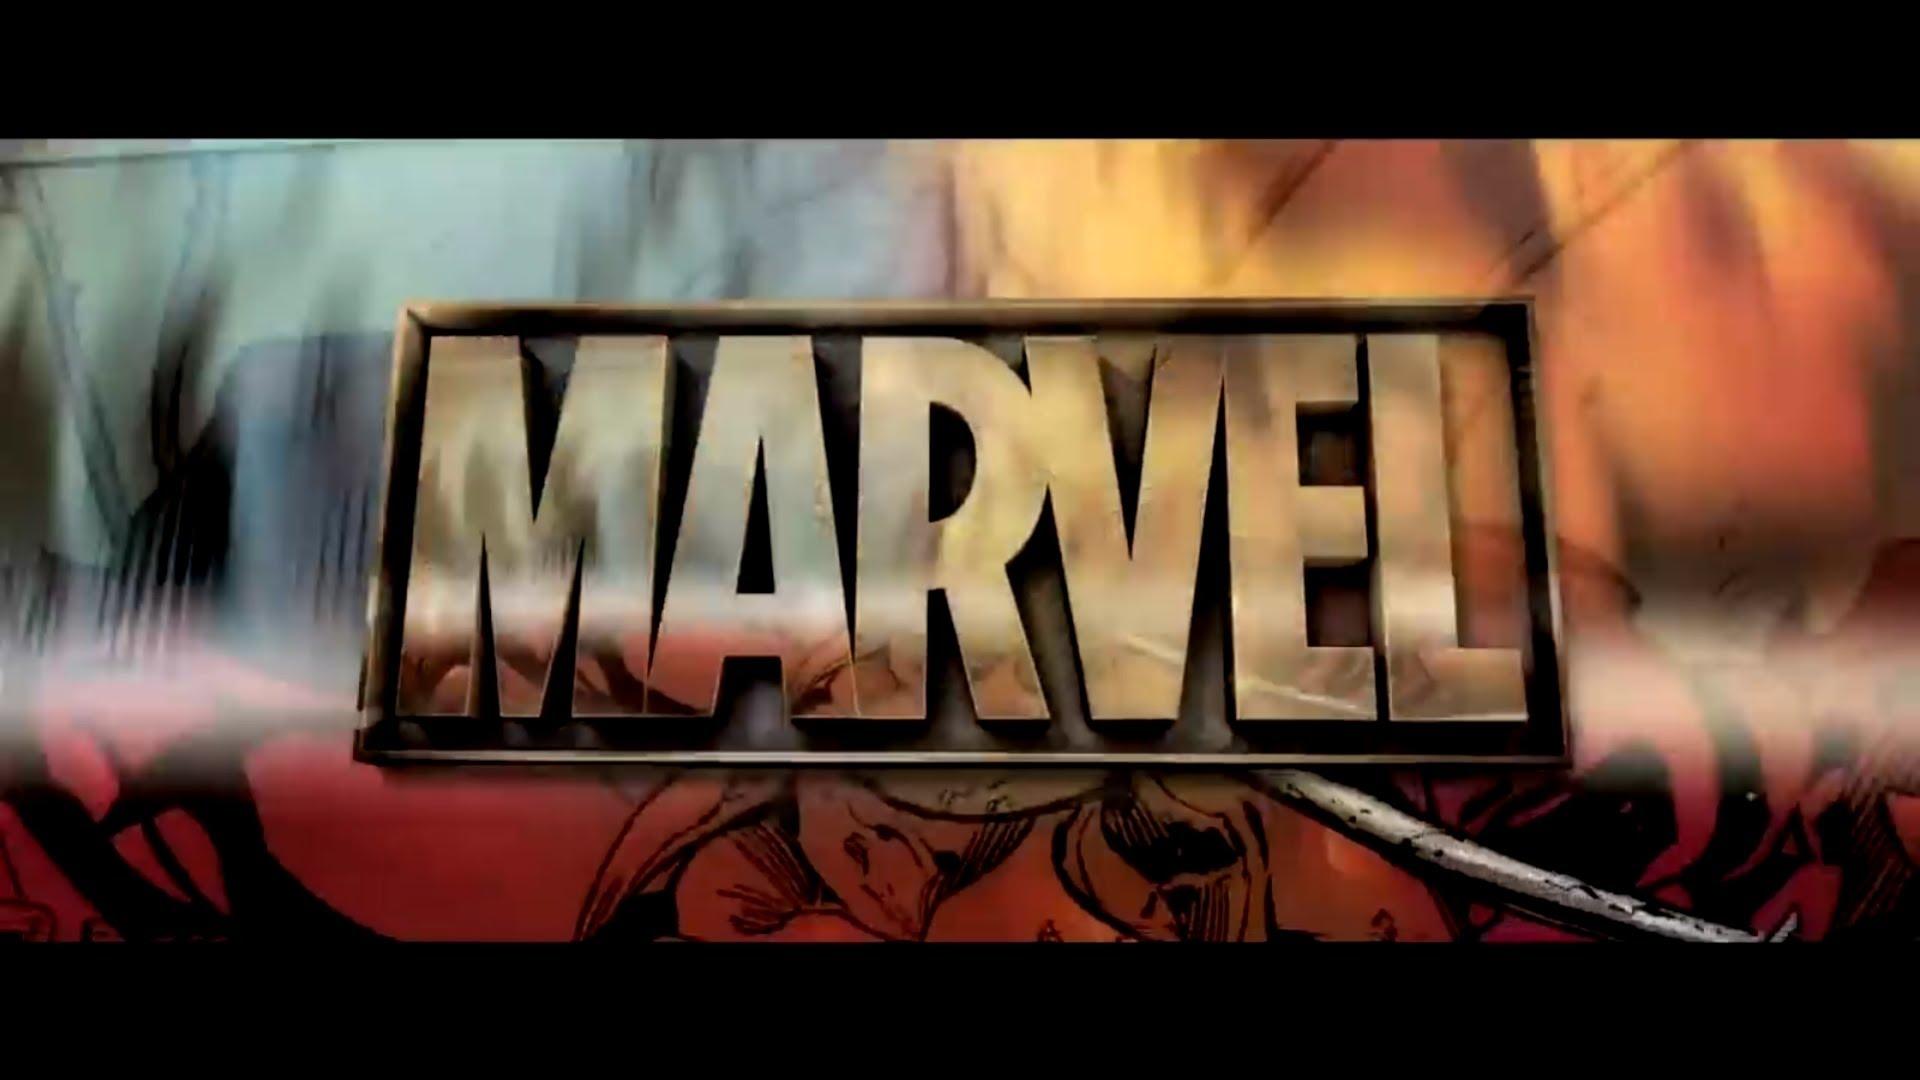 Marvel Logo Wallpaper